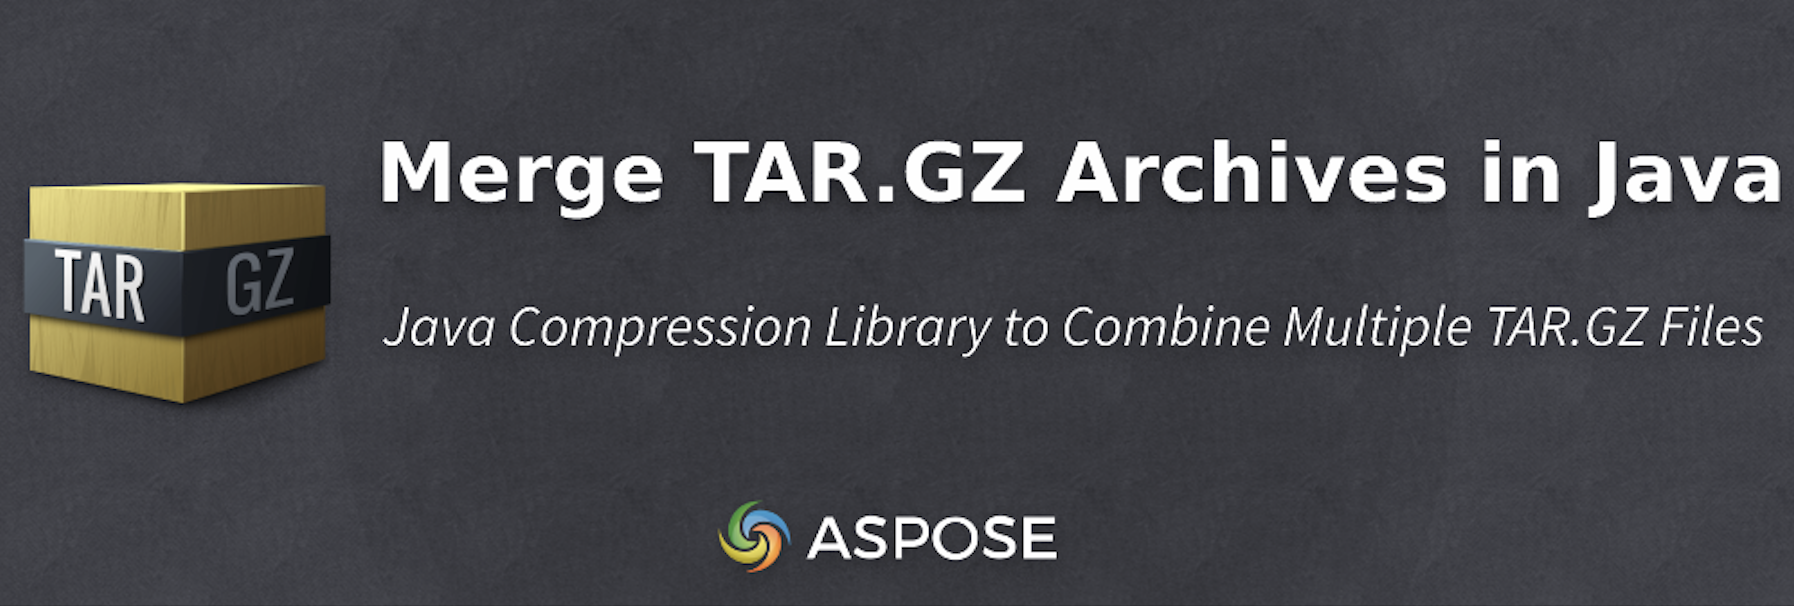 TAR.GZ-Archive in Java programmgesteuert zusammenführen